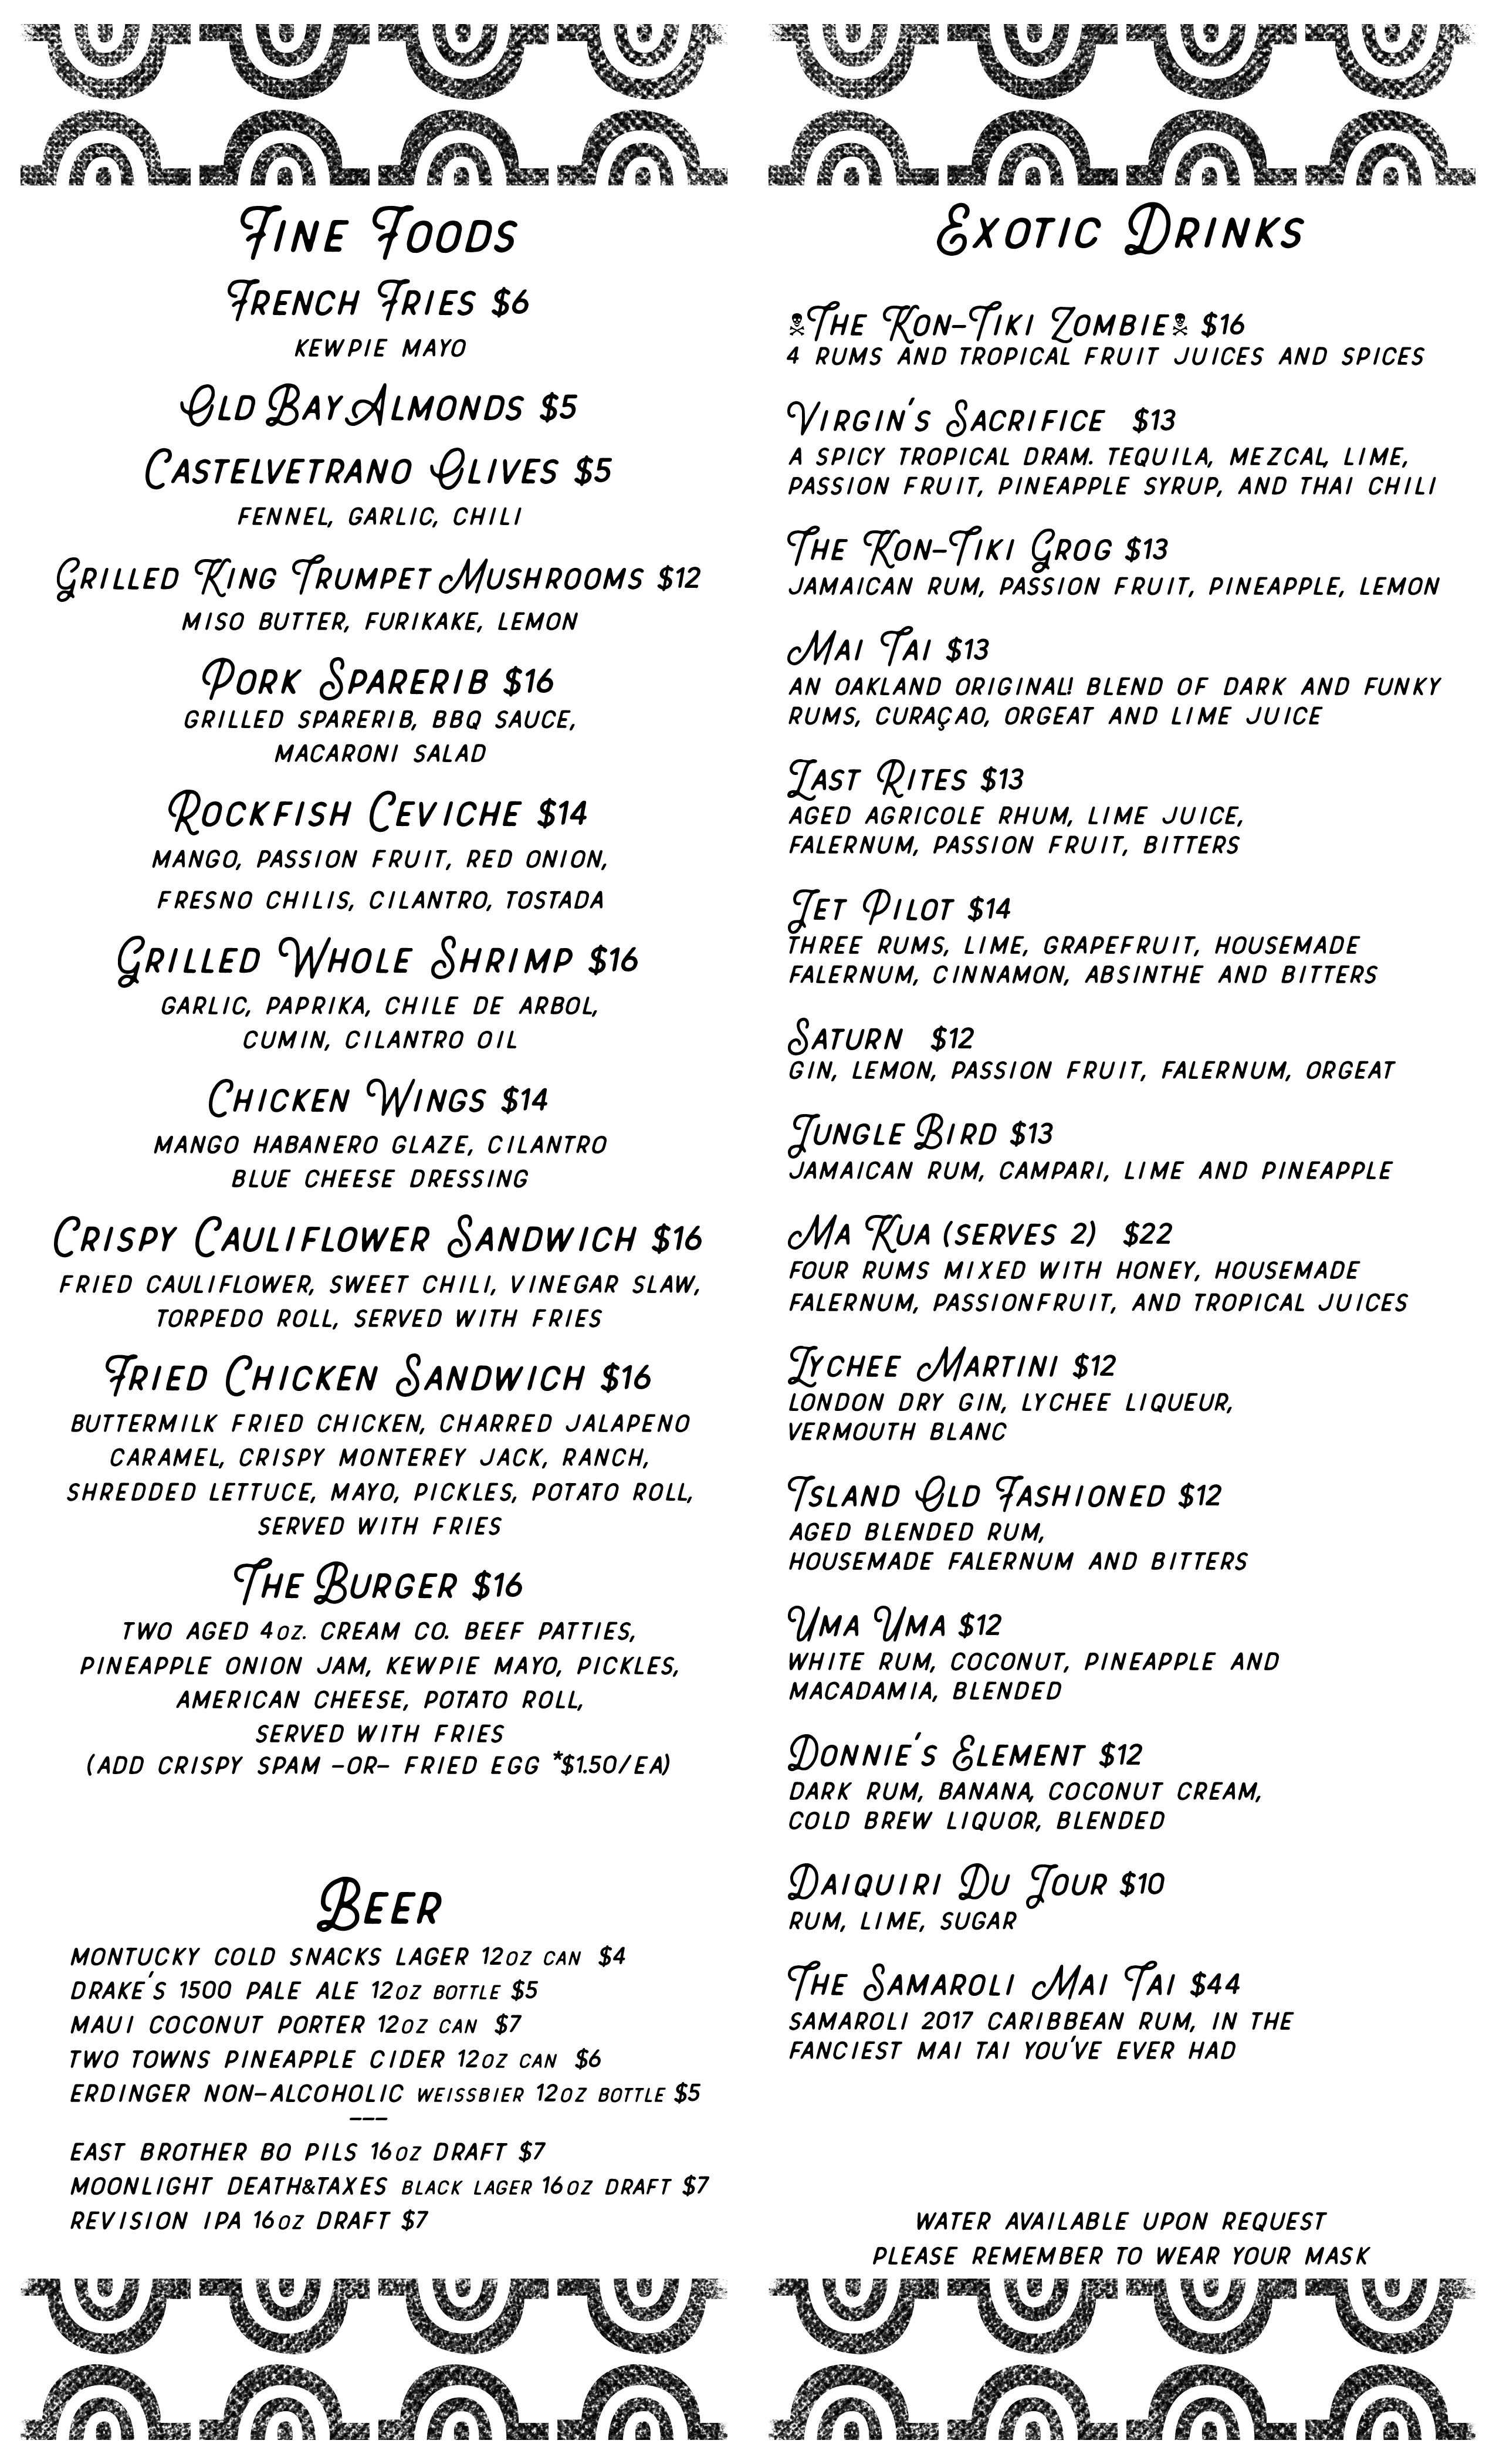 menu of food and drinks